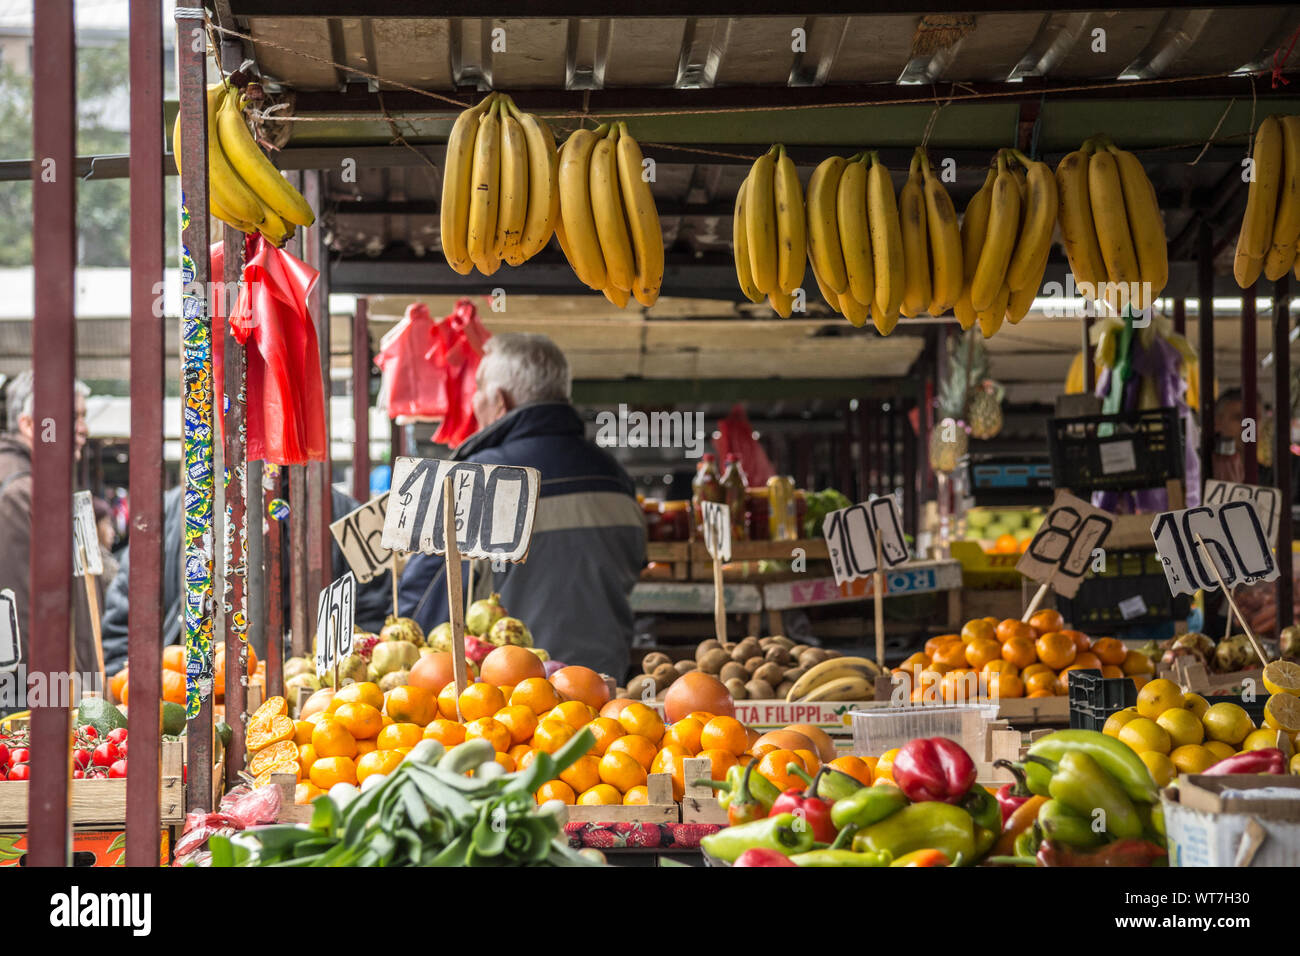 Belgrad, Serbien - 1. NOVEMBER 2014: Obst und Gemüse, vor allem Bananen, hängen für Verkauf auf einem Stand von Kalenic Pijaca, einer der wichtigsten grün Marke Stockfoto